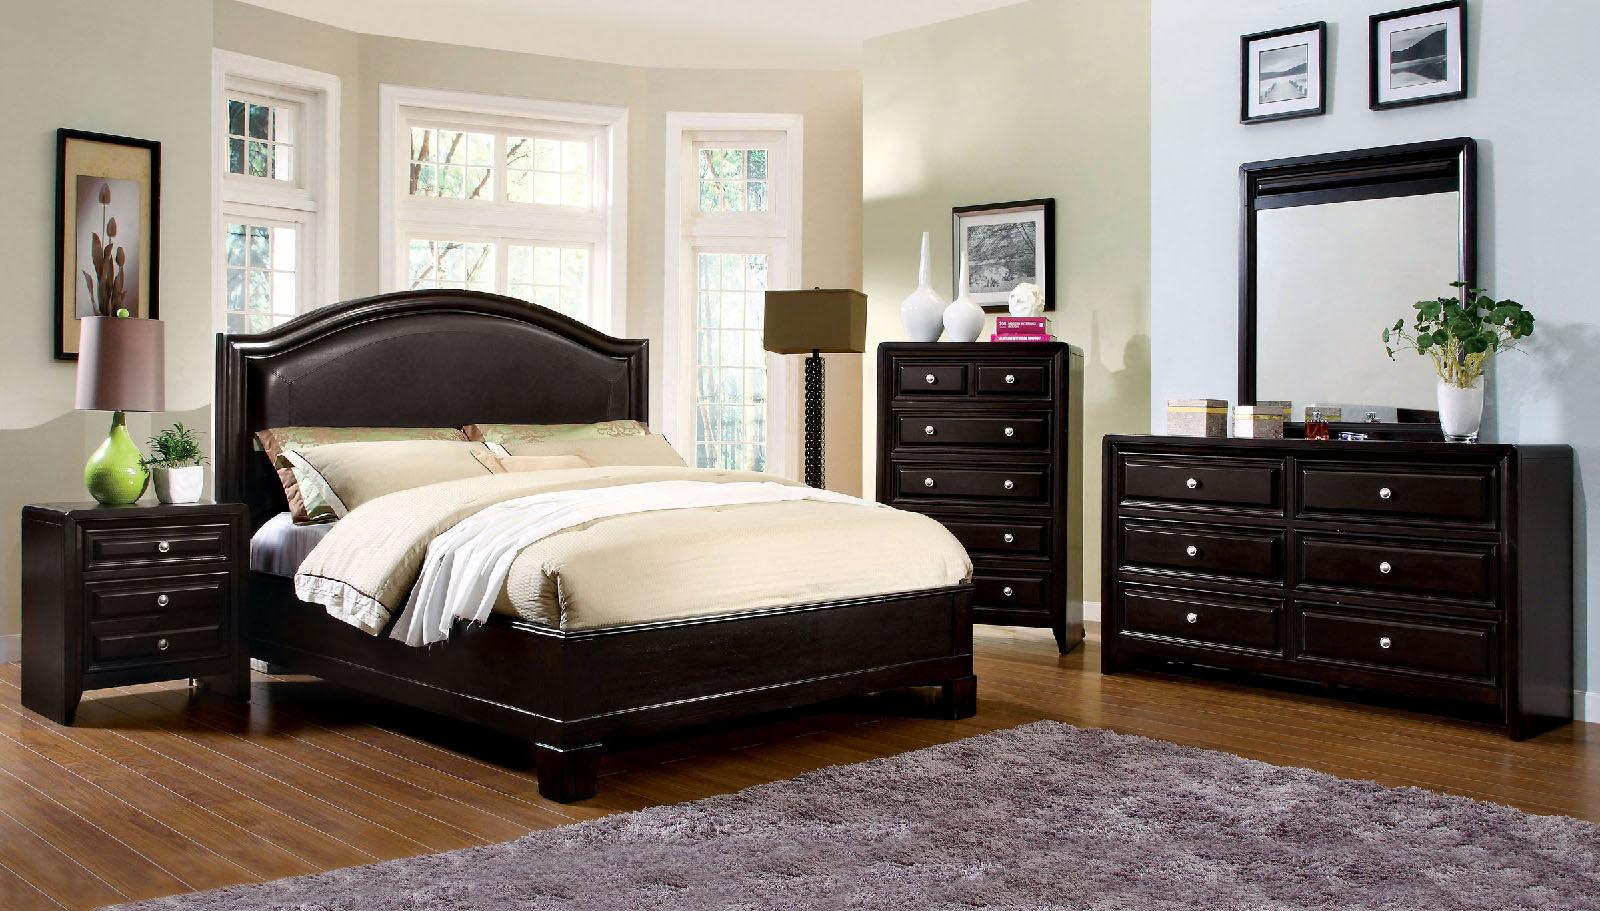 

    
Transitional Espresso Solid Wood King Bedroom Set 5pcs Furniture of America CM7058-EK Winsor
